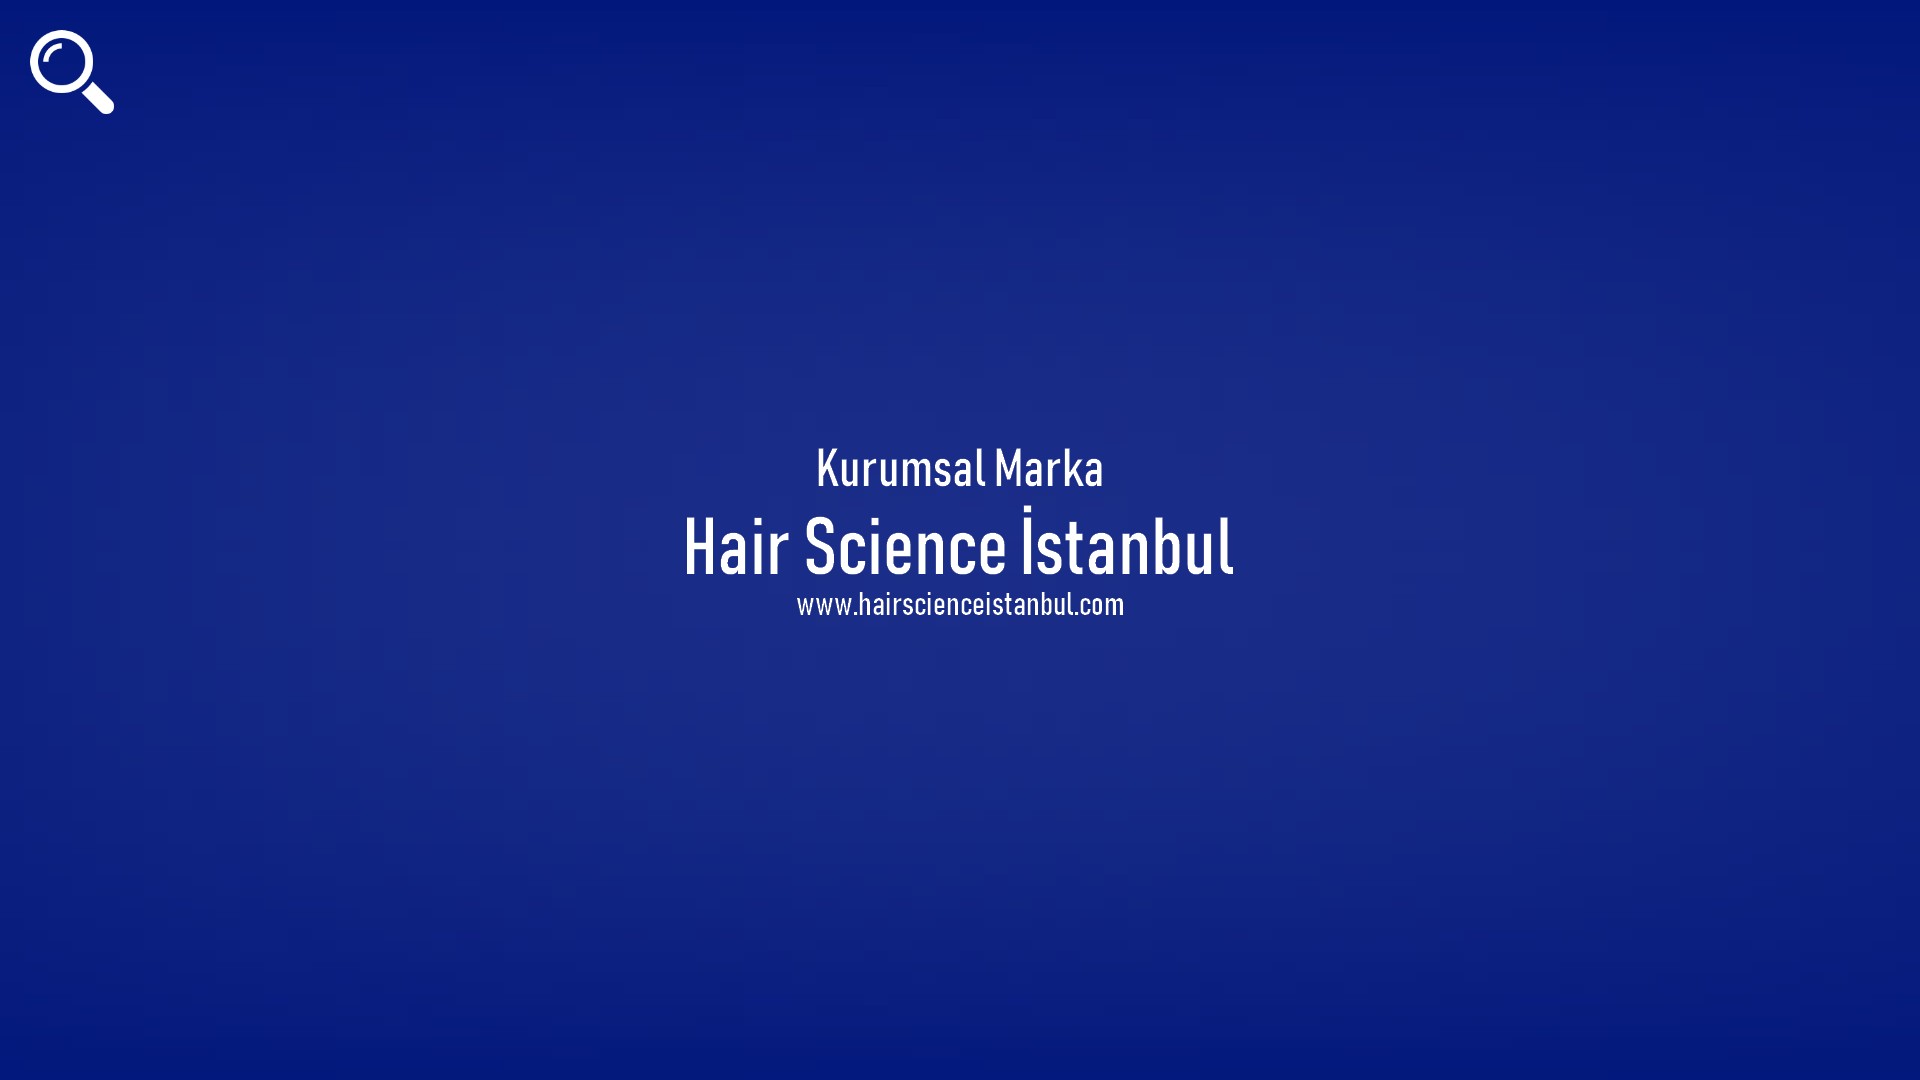 Hair Science İstanbul başlıklı içeriğin kapak resmi.